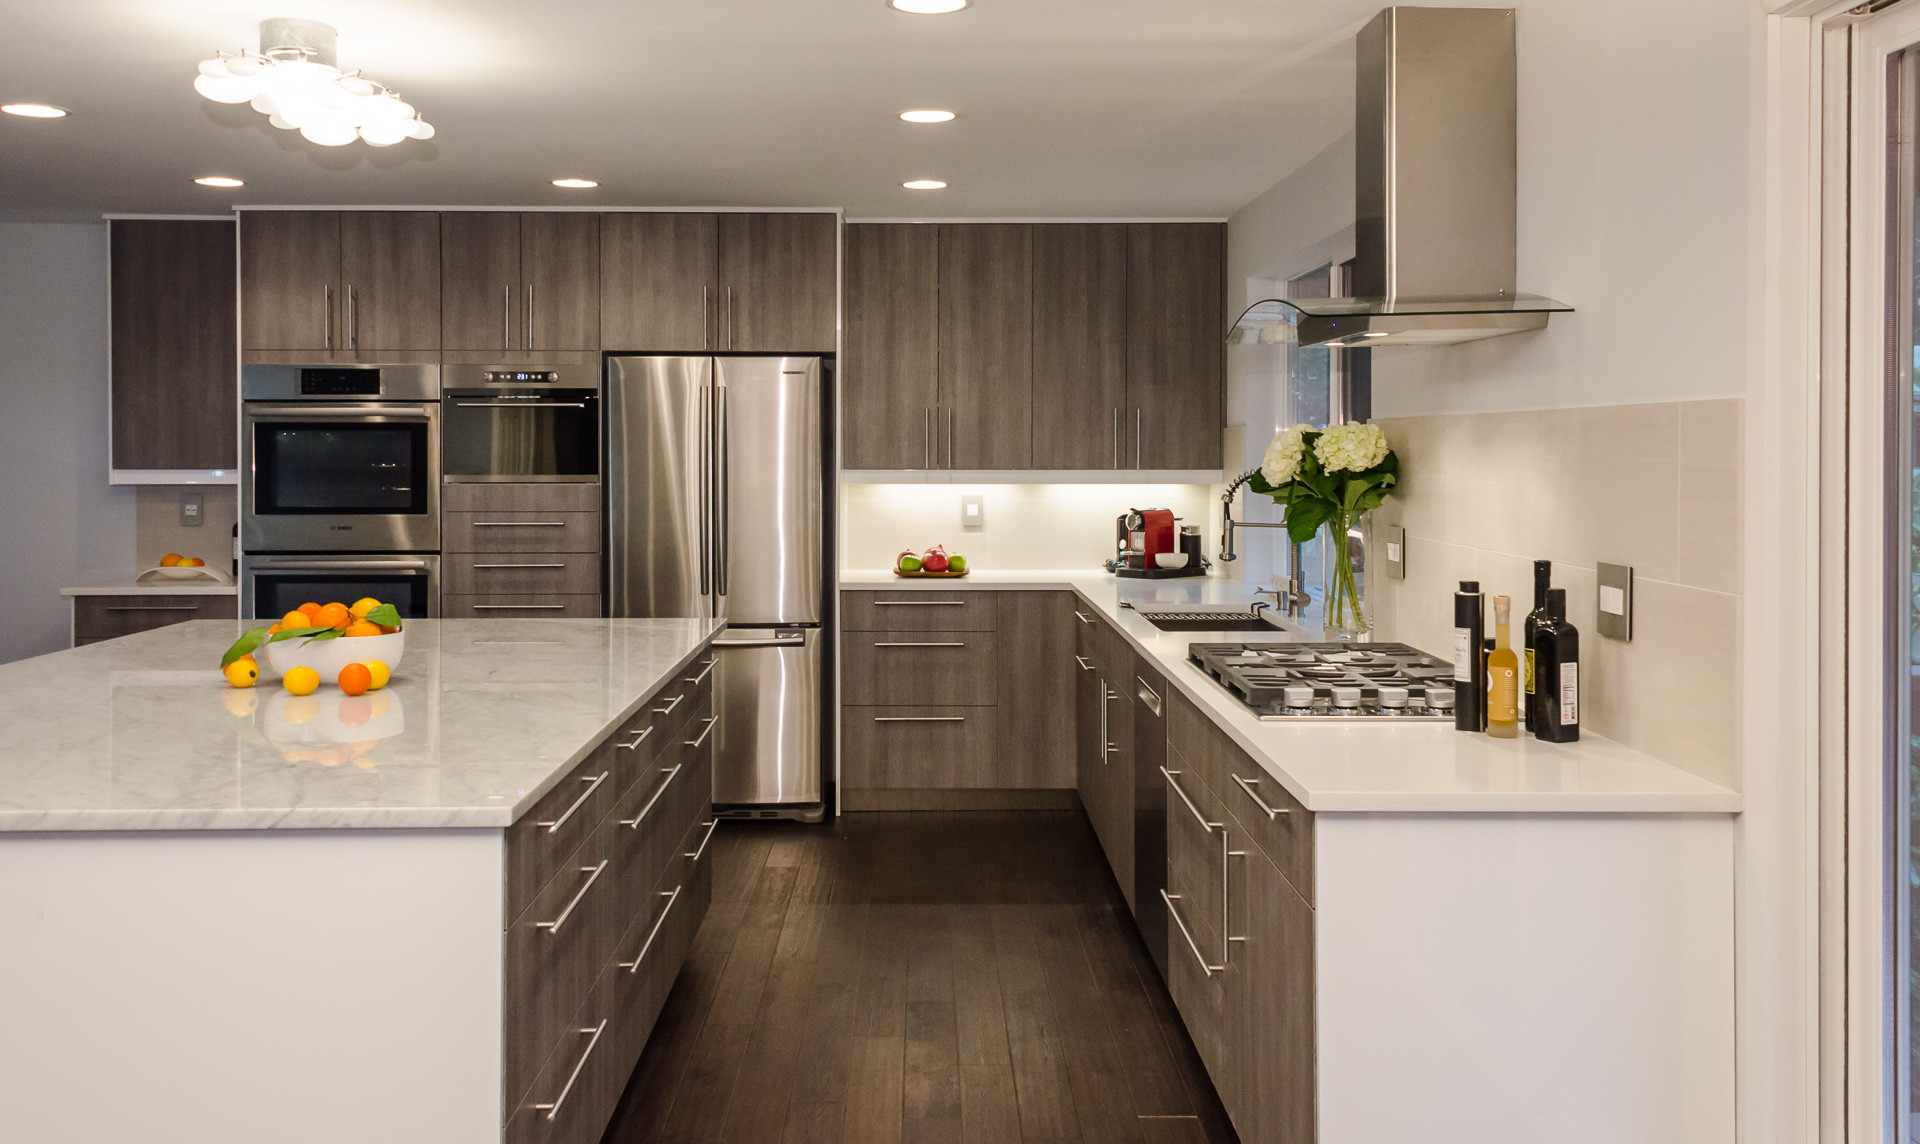 Modern Kitchen Cabinets Ikea
 50 Modern Kitchen Cabinet Styles To Die For Modern